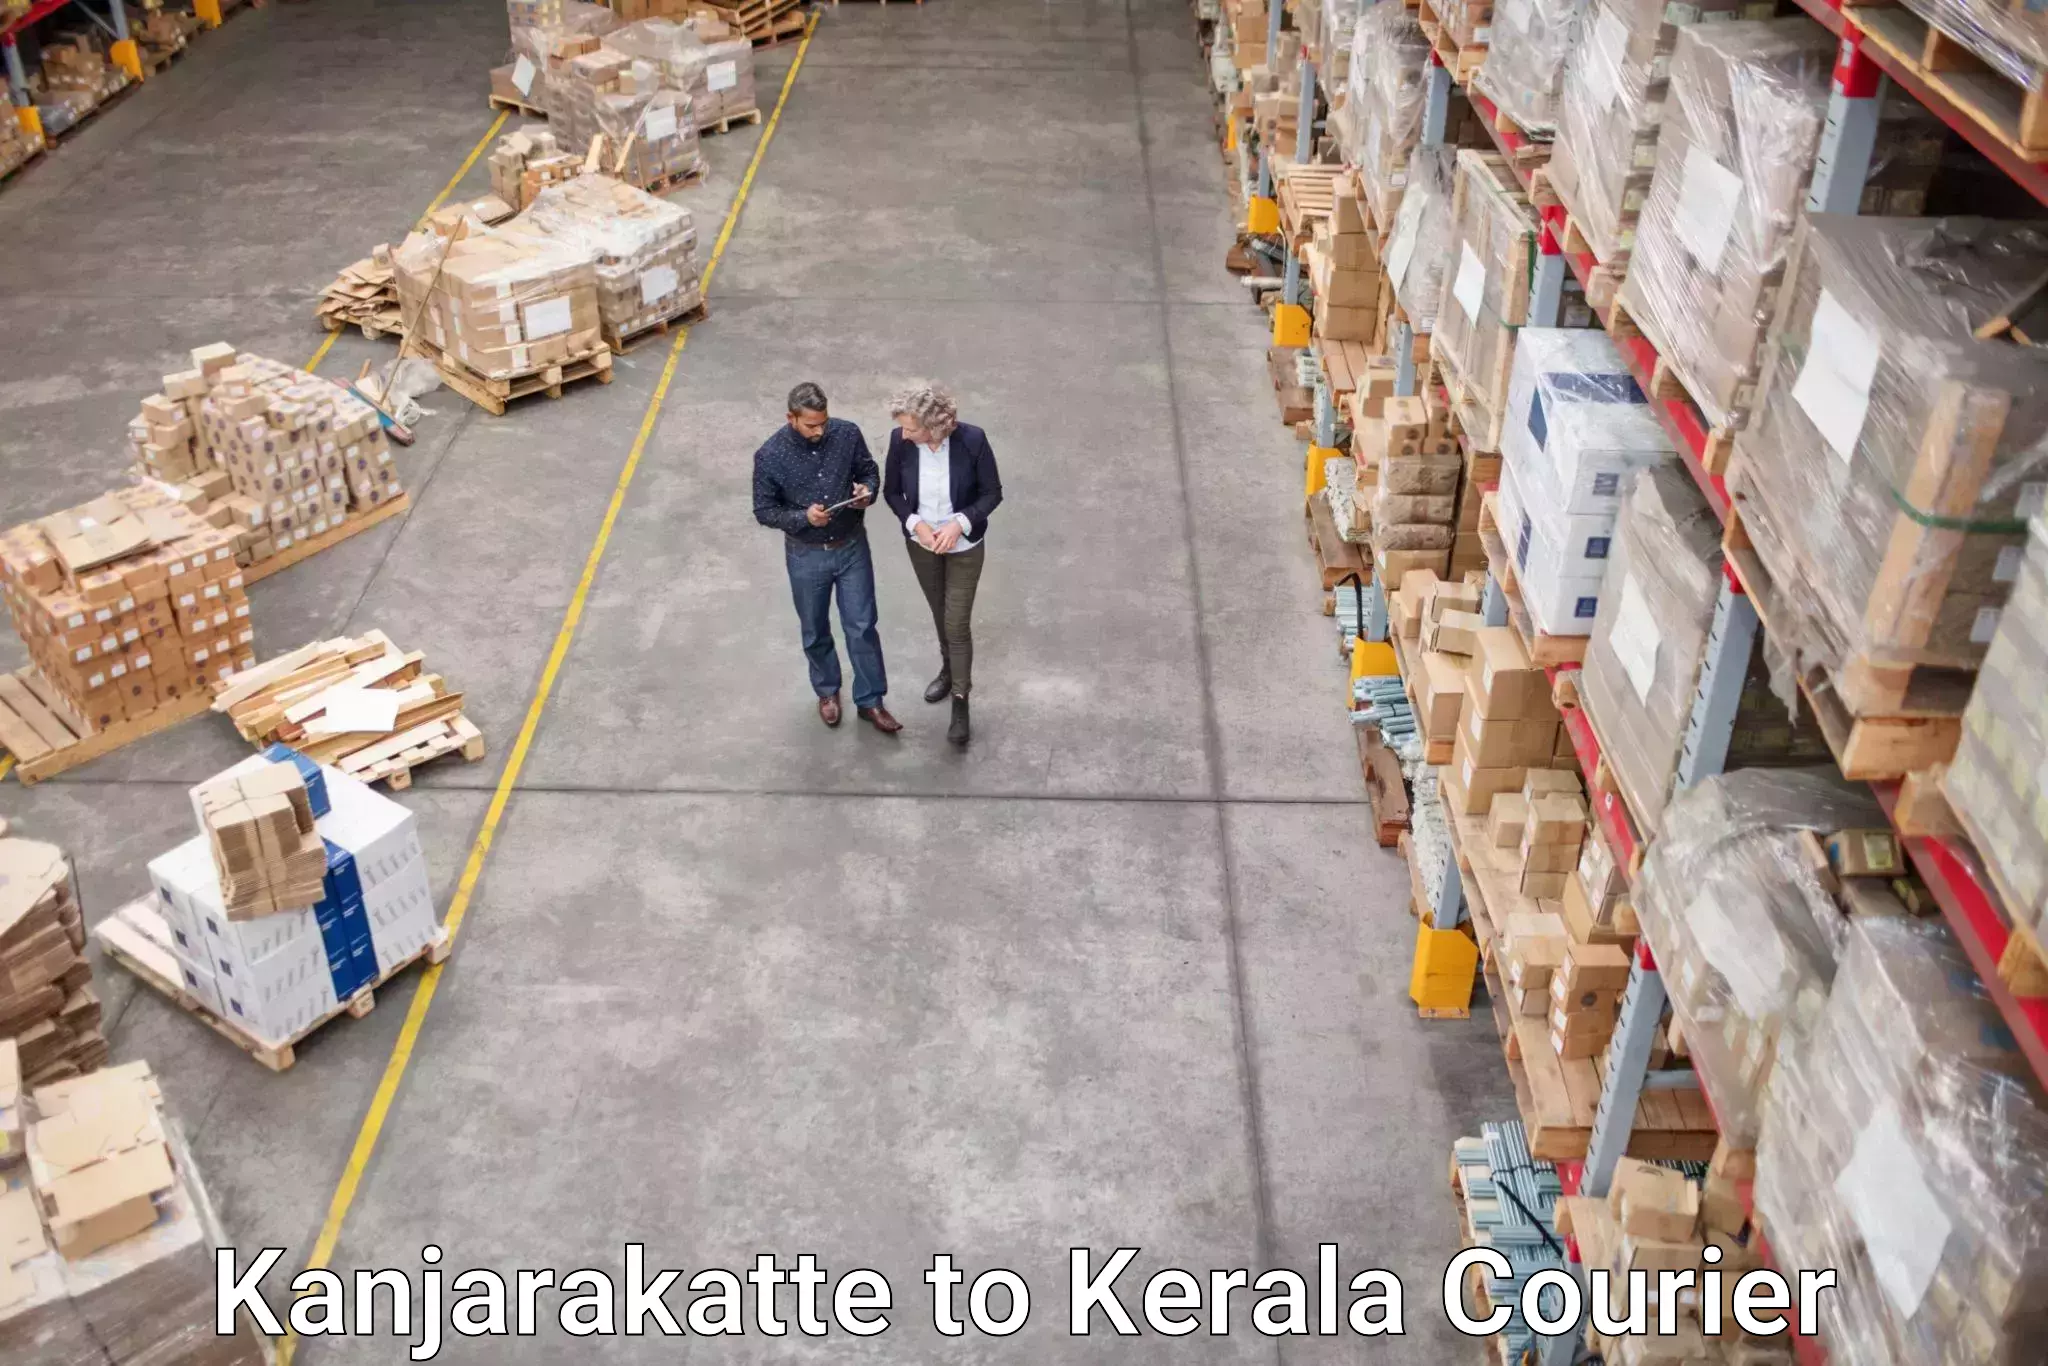 Courier service booking Kanjarakatte to Kerala